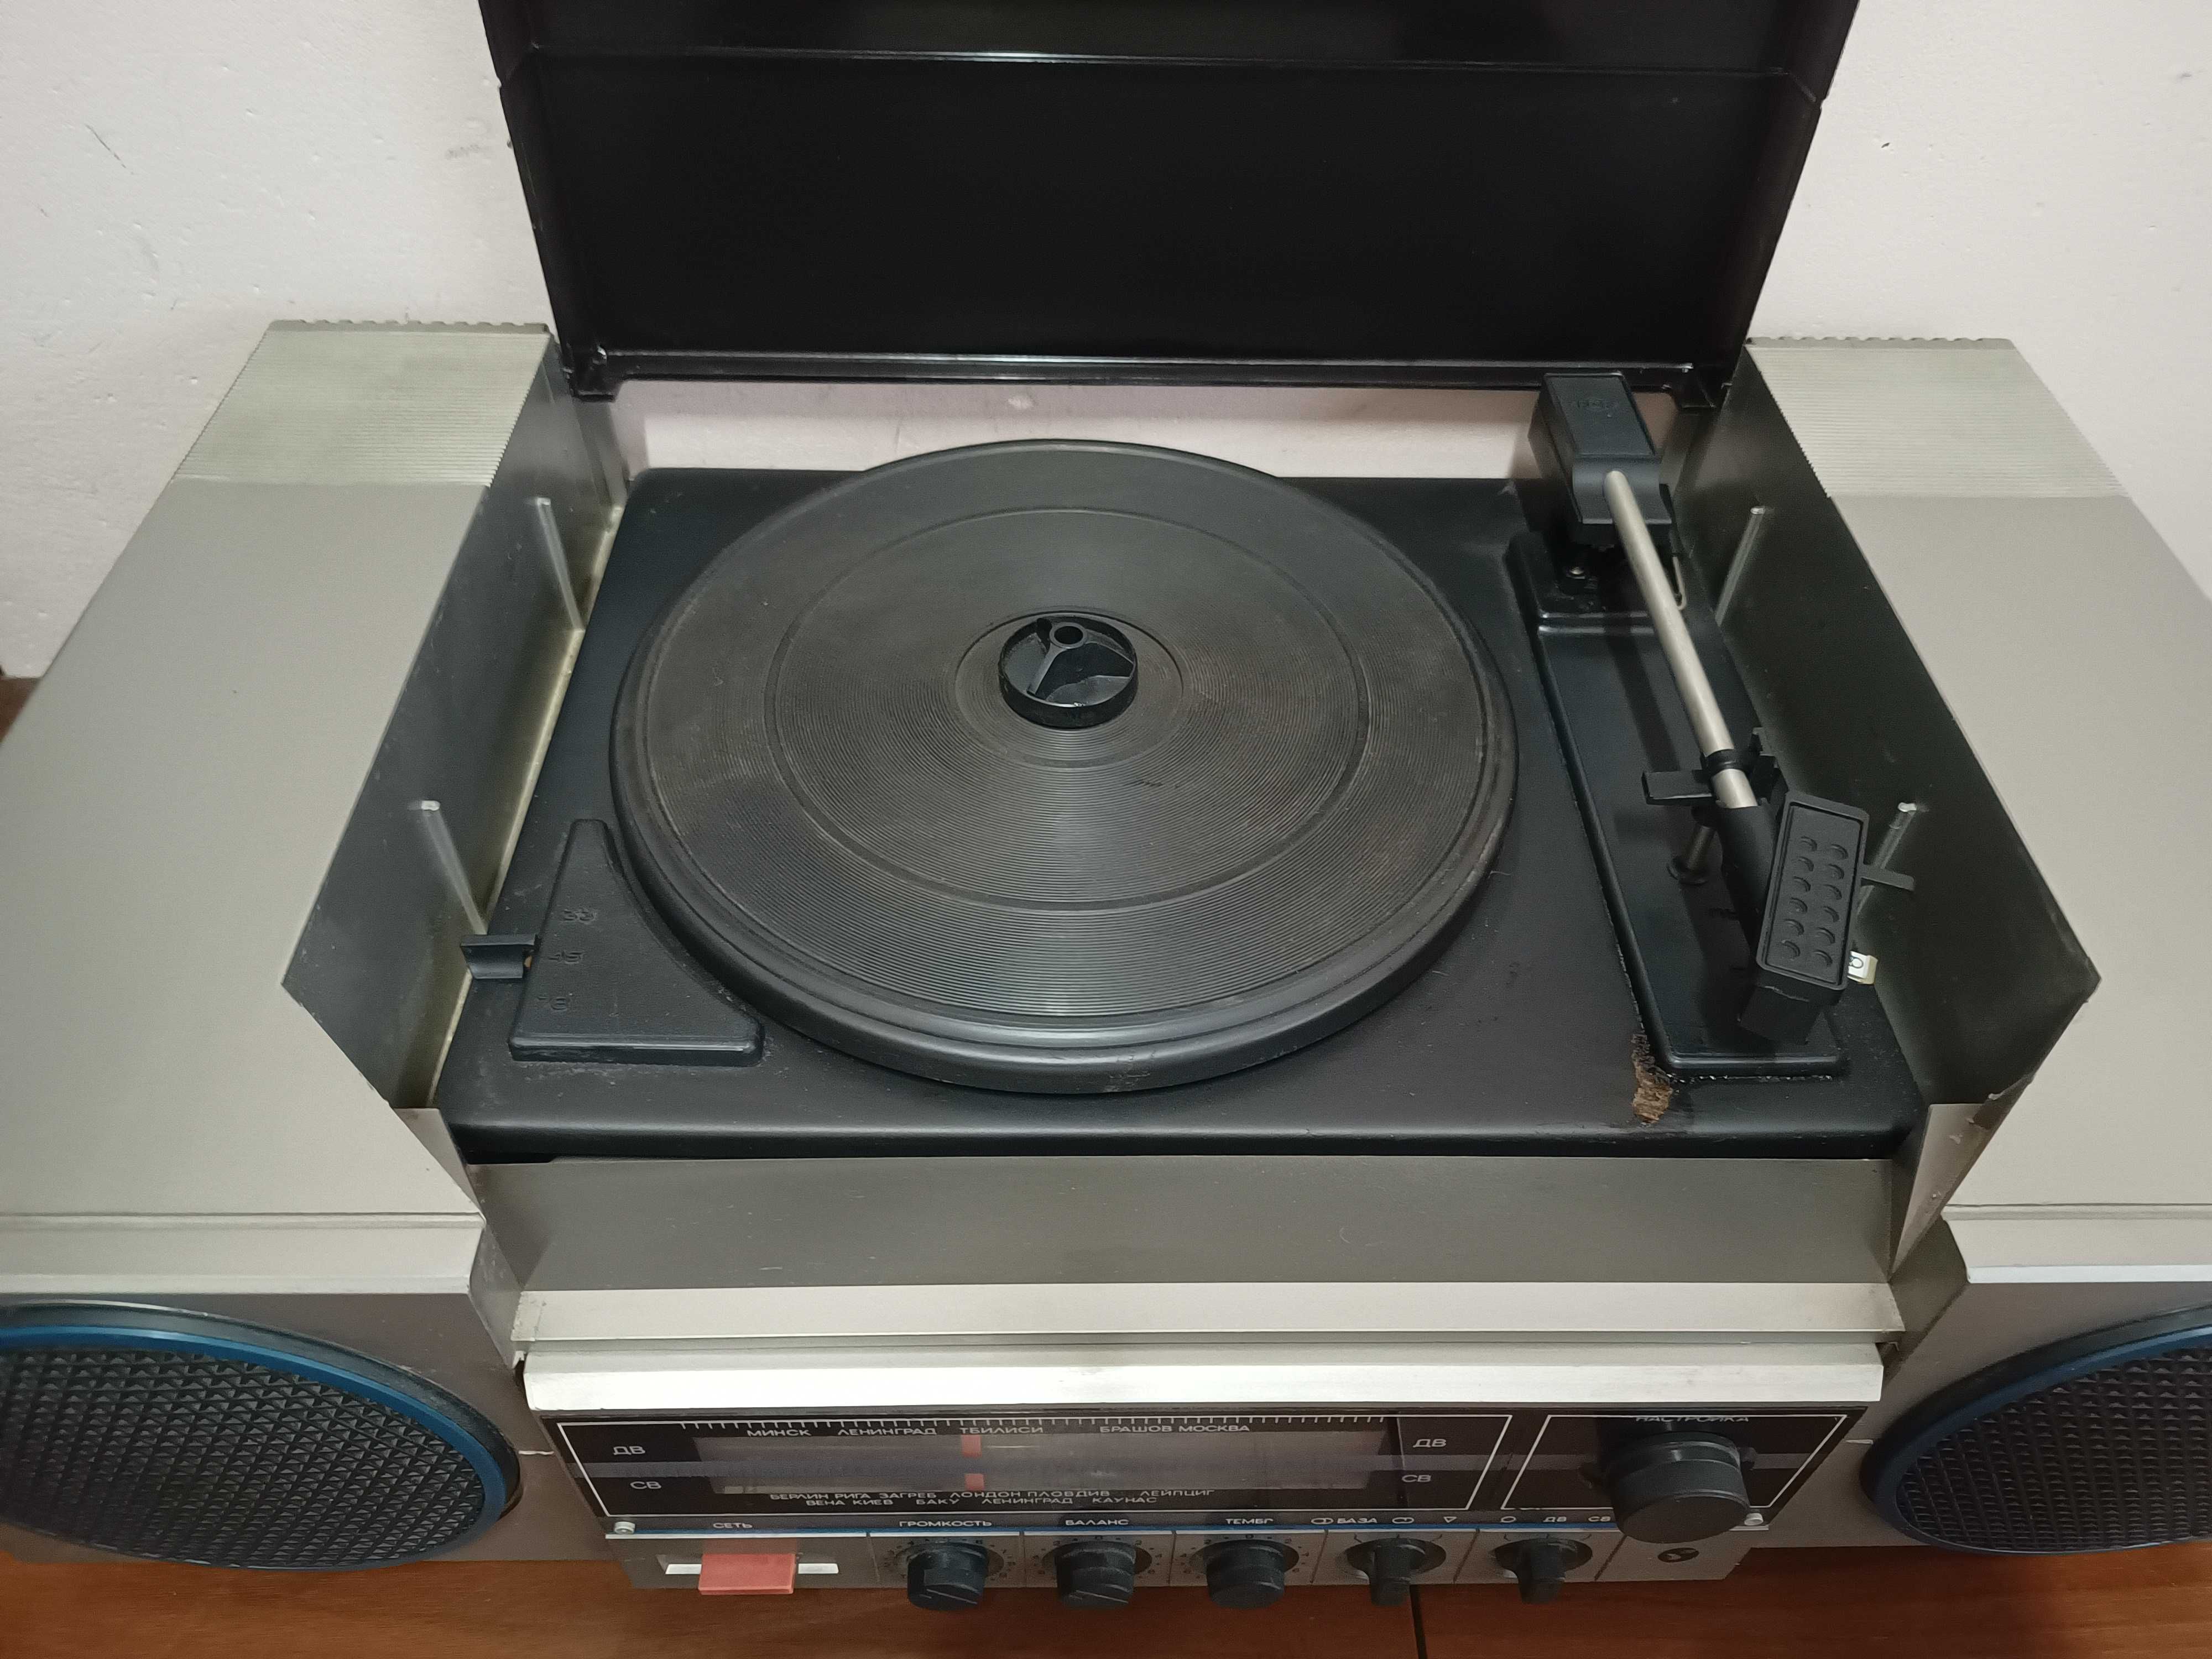 Radzieckie radio z gramofonem Wega 300 stereo z PRL